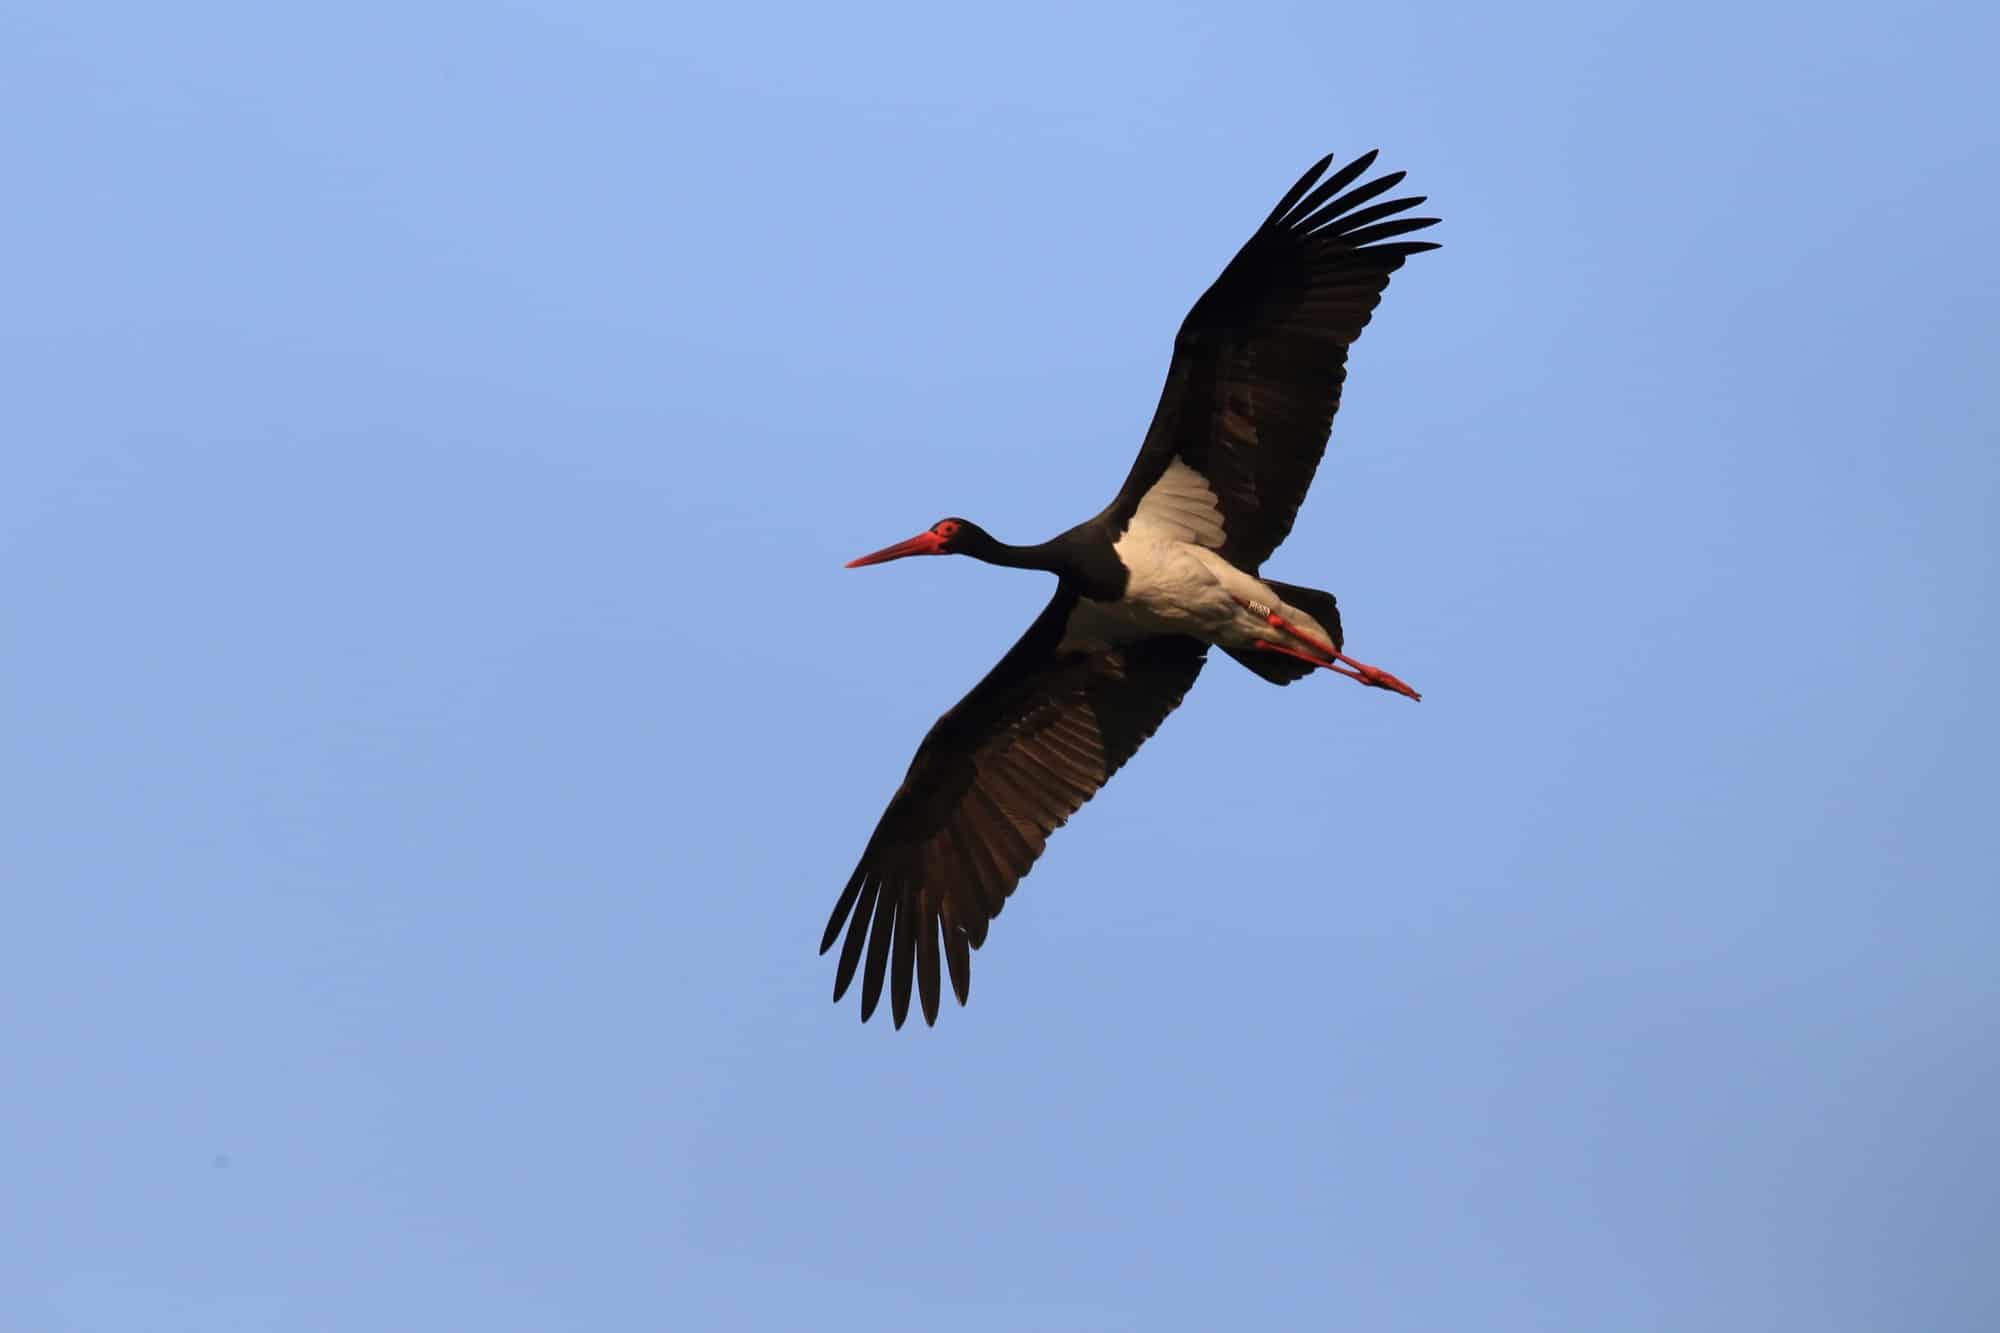 Czarny bocian to wyjątkowy ptak, którego możesz spotkać w Kampinosie, głównie w północnej części bliżej Łomianek i Dziekanowa Leśnego.